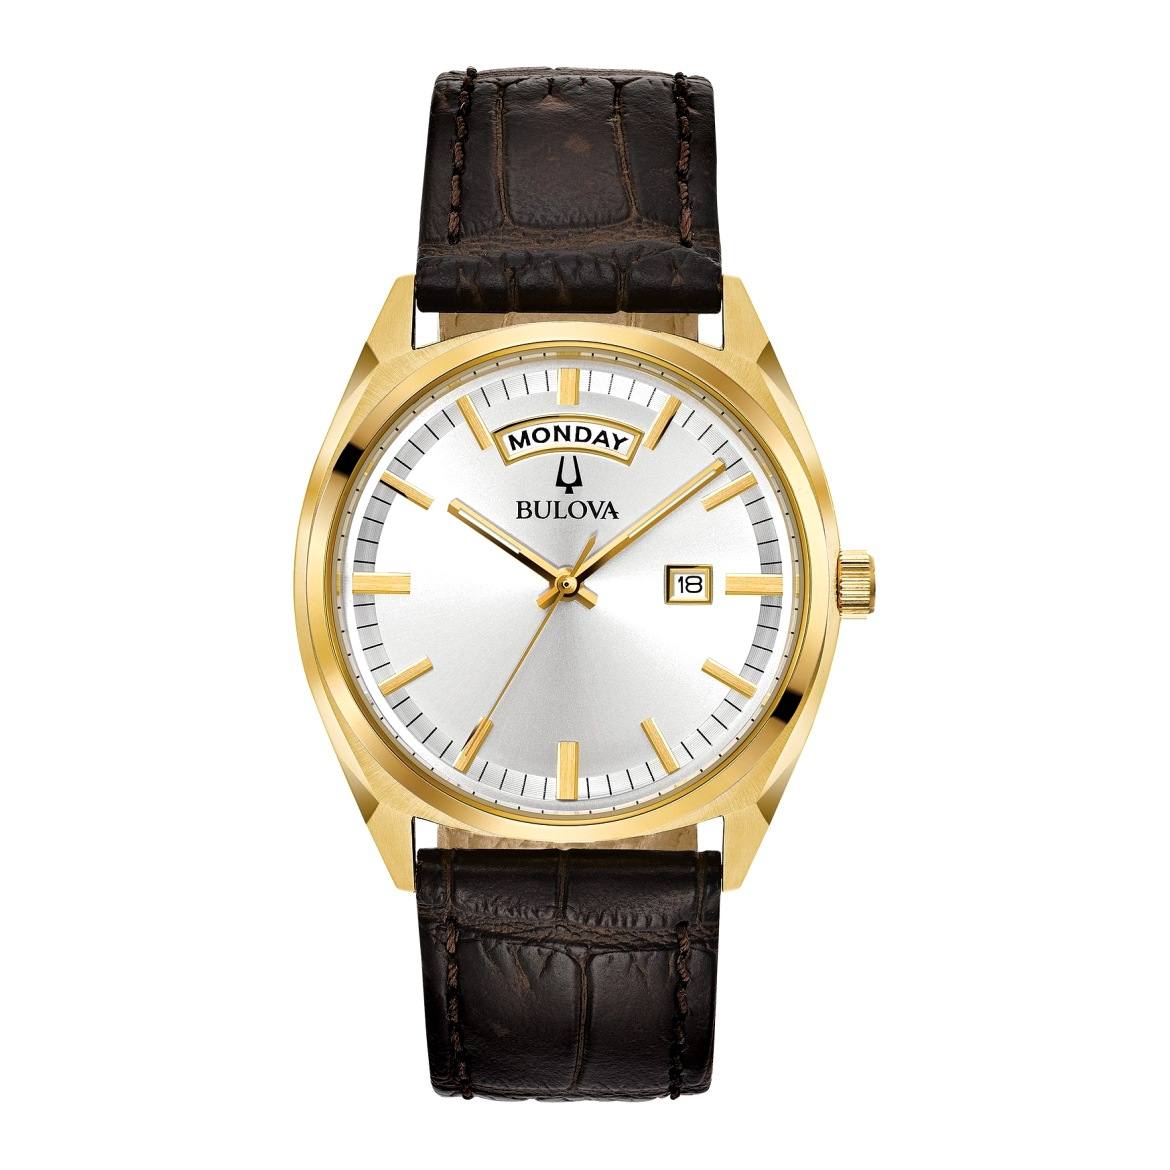 Các mẫu đồng hồ thuộc bộ sưu tập Classic có thiết kế đơn giản, đậm chất cổ điển.